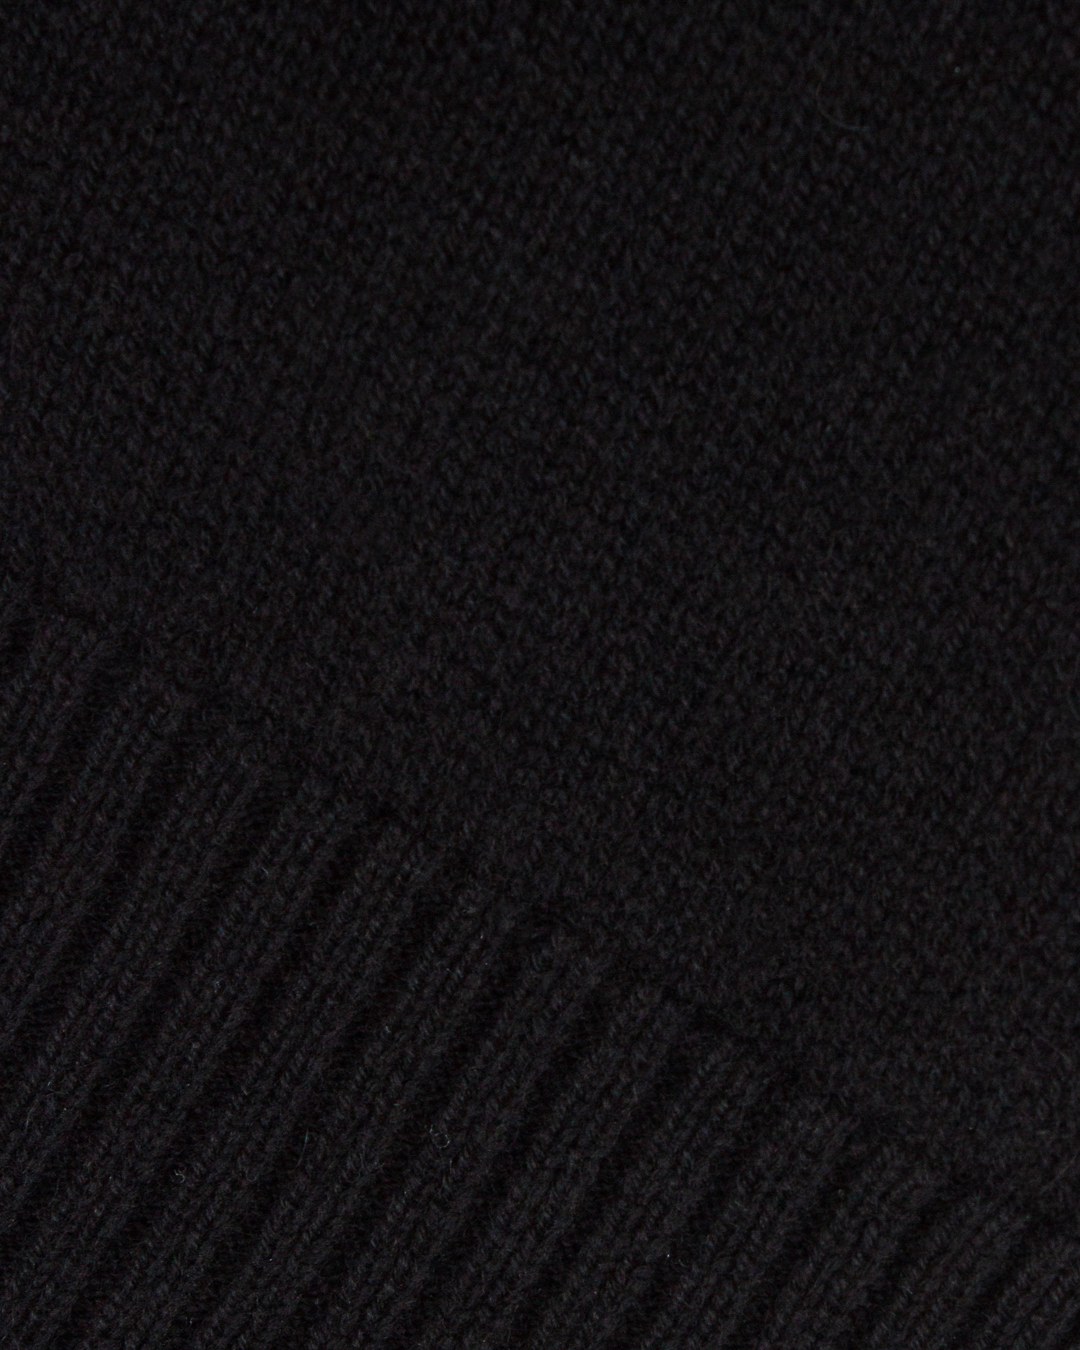 длинный шарф FREE AGE. W23.SC018.2030.900 черный UNI, размер UNI - фото 2